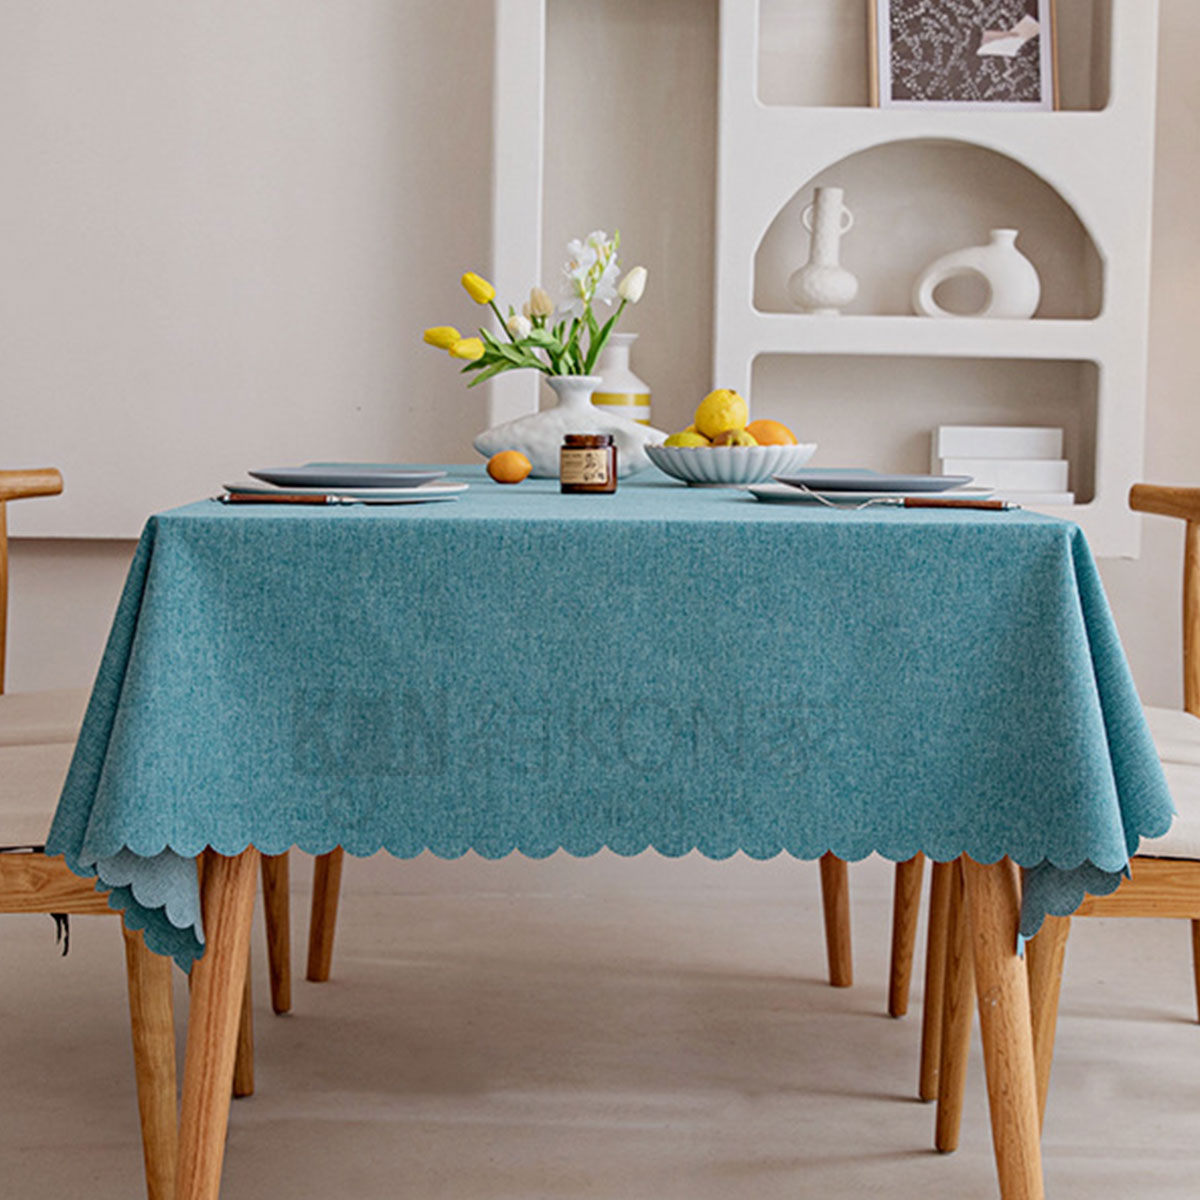 テーブルクロス テーブルカバー 正方形 スクエア 北欧風 撥水加工 綿麻 